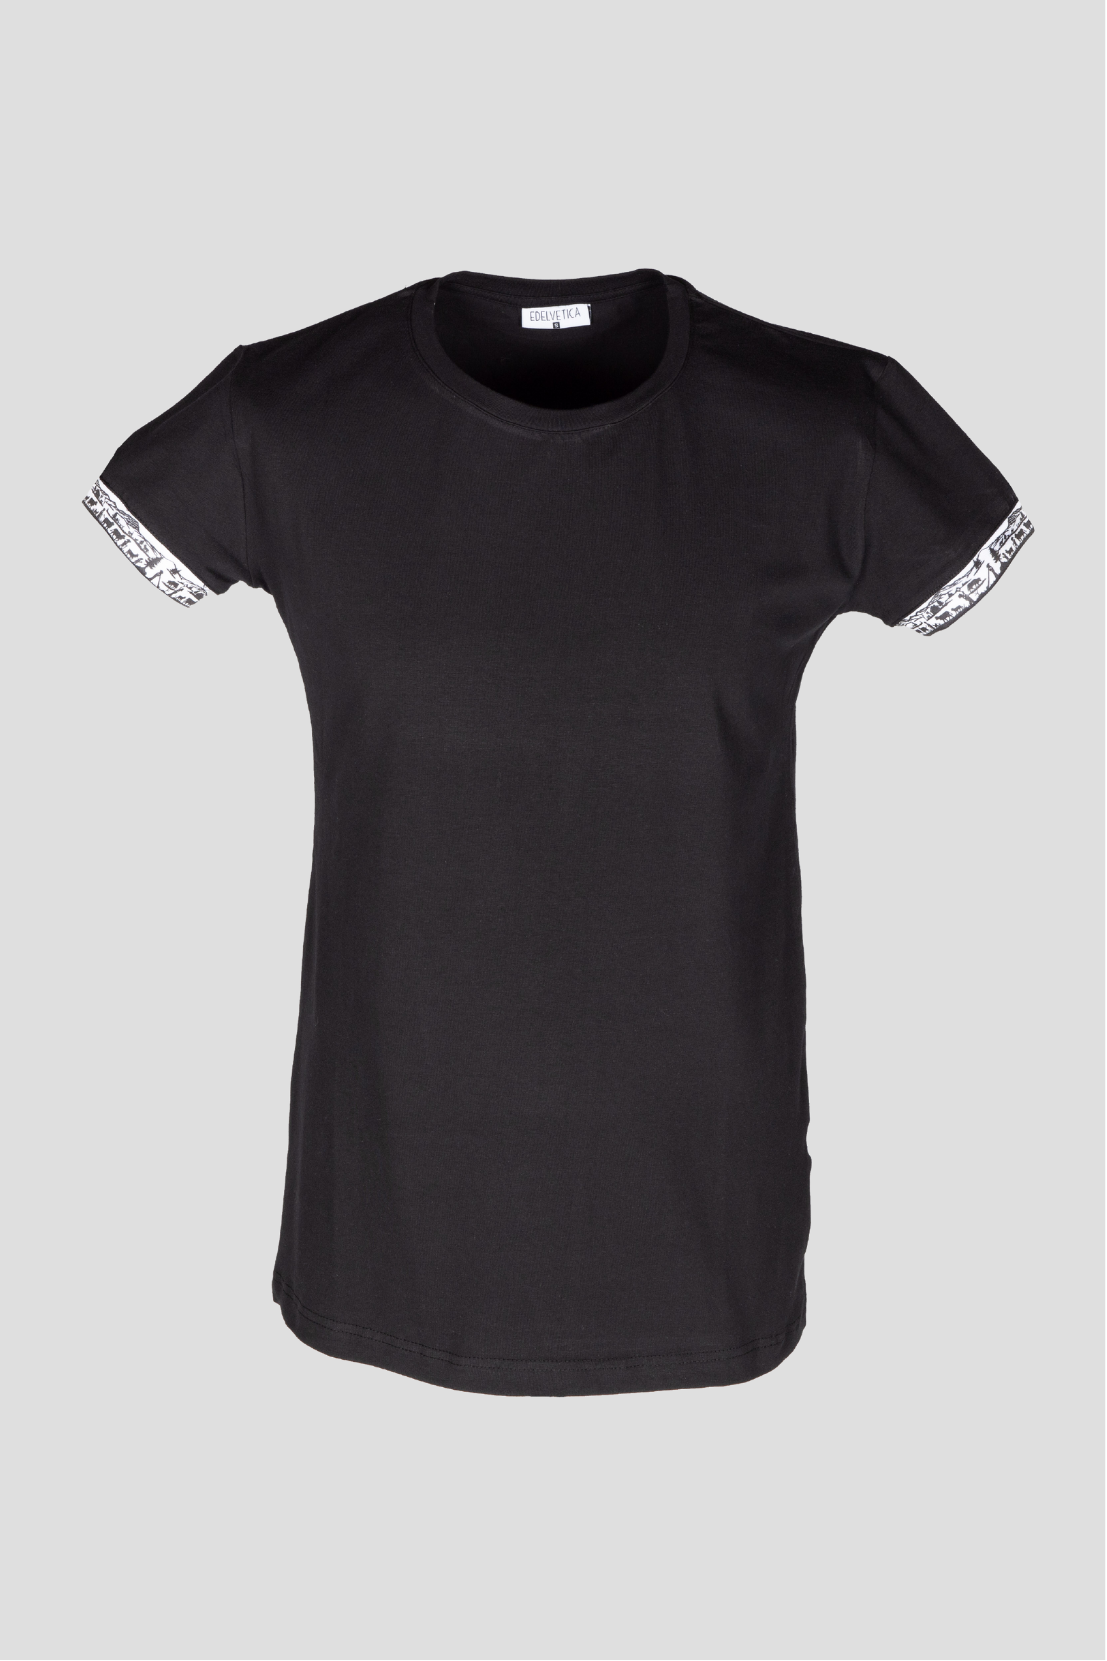 Herren-T-Shirt mit Scherenschnitt-Motiv am Armabschluss von Edelvetica